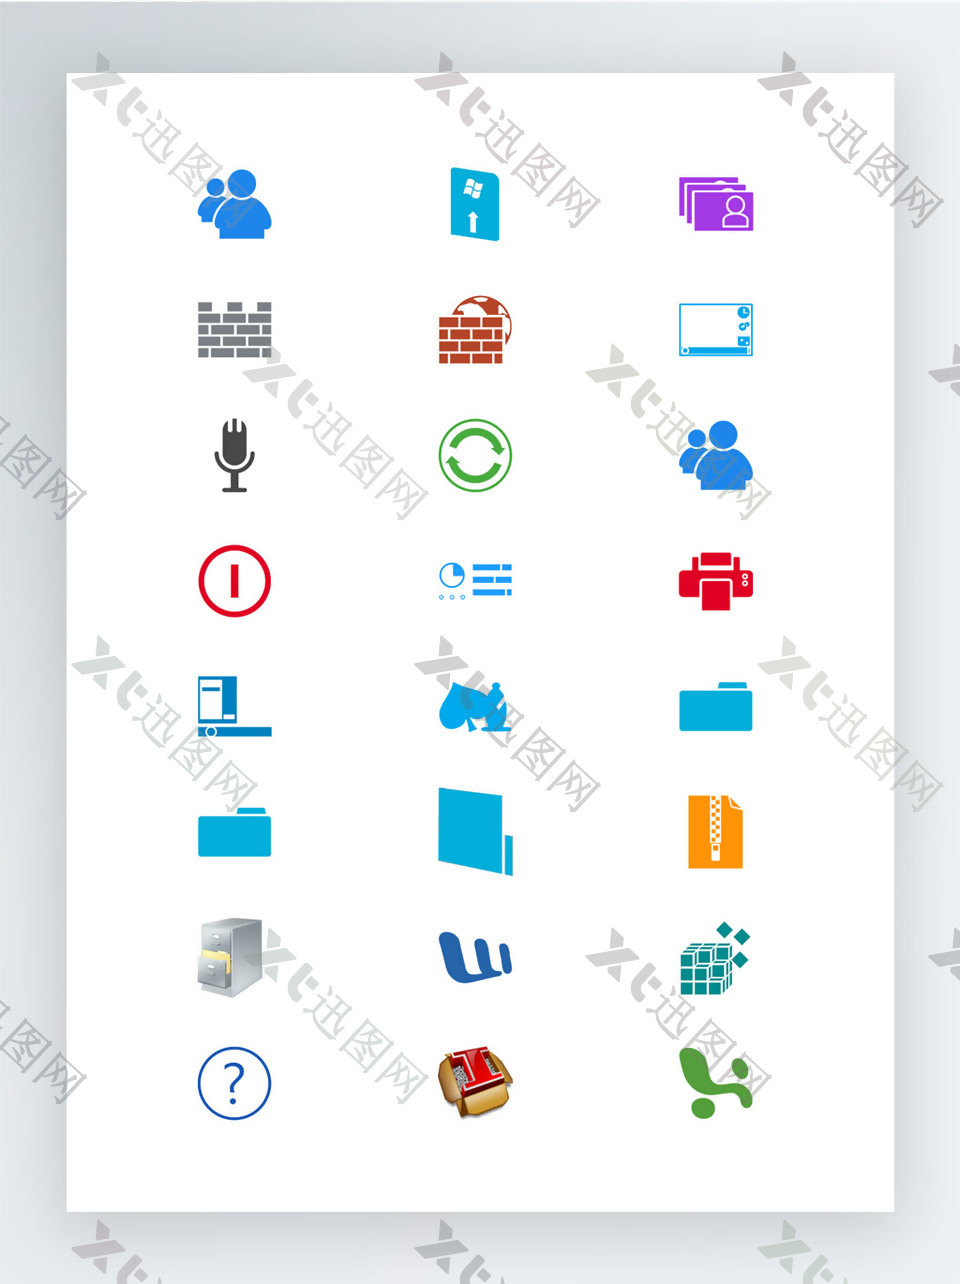 纯Windows8风格的图标集